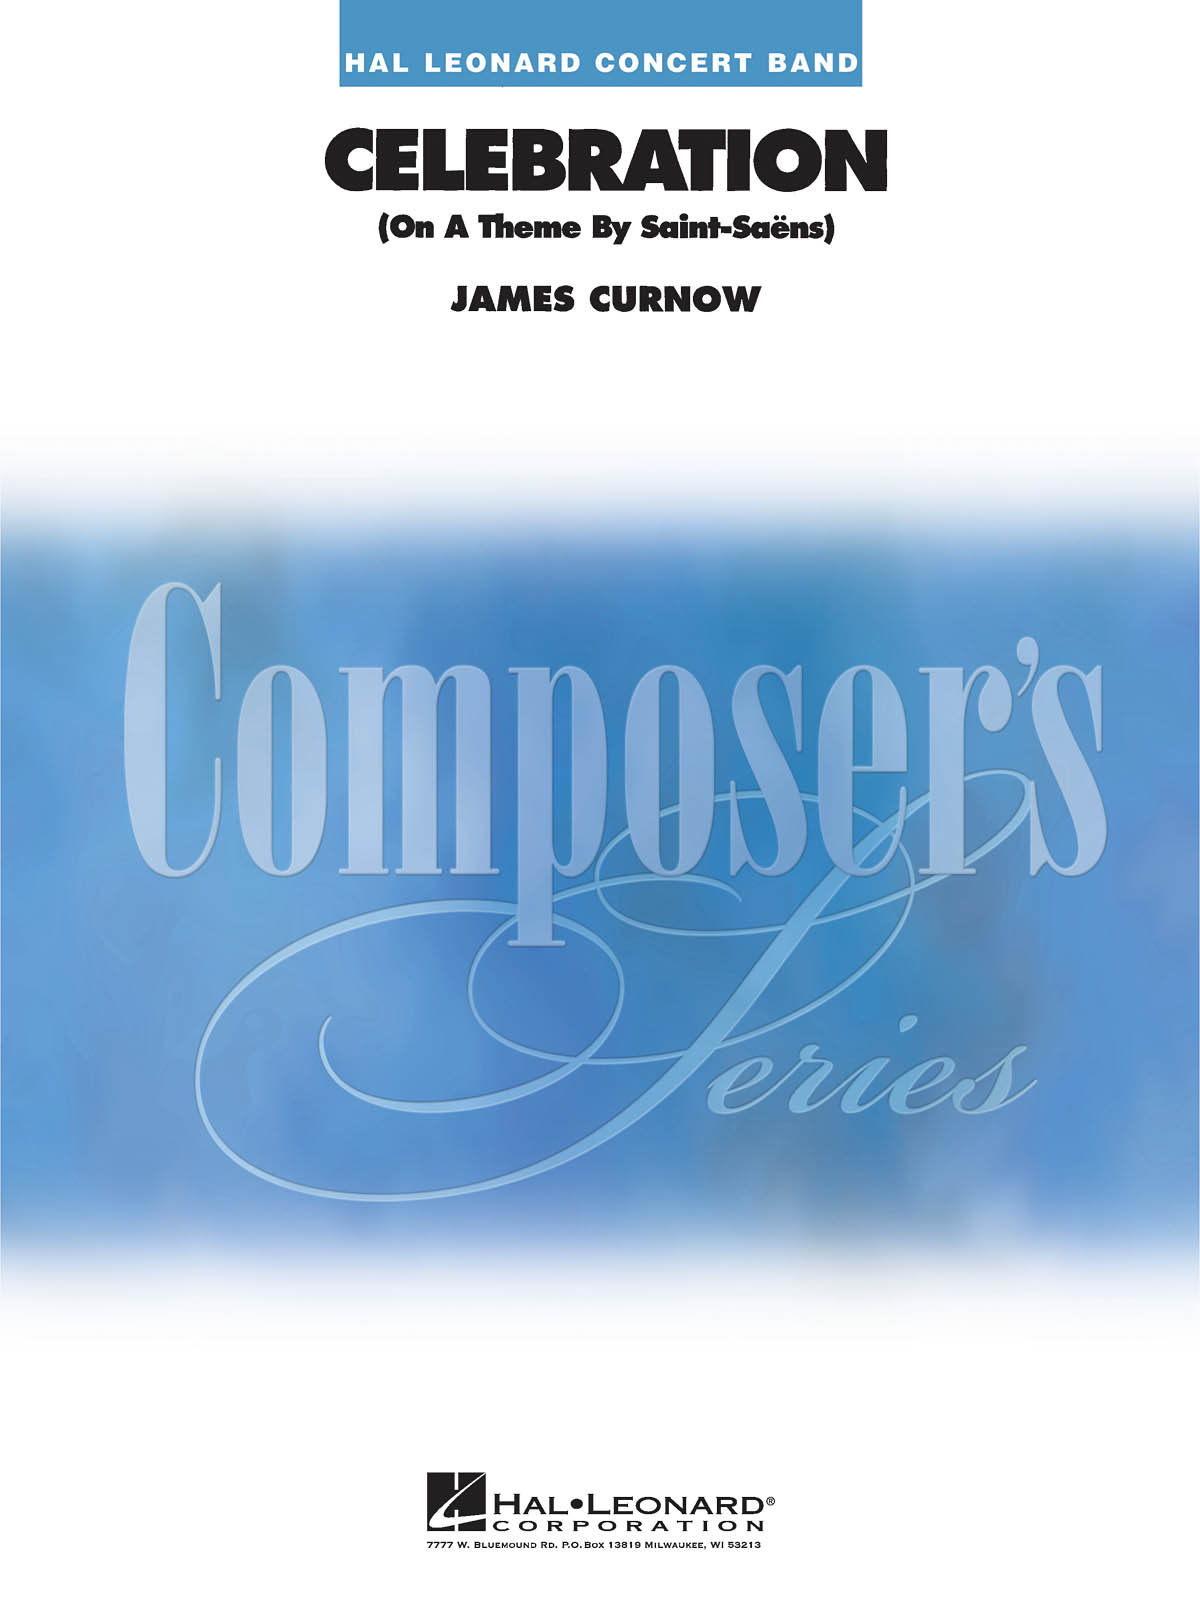 James Curnow: Celebration On a Theme by Saint-Saens: Concert Band: Score & Parts